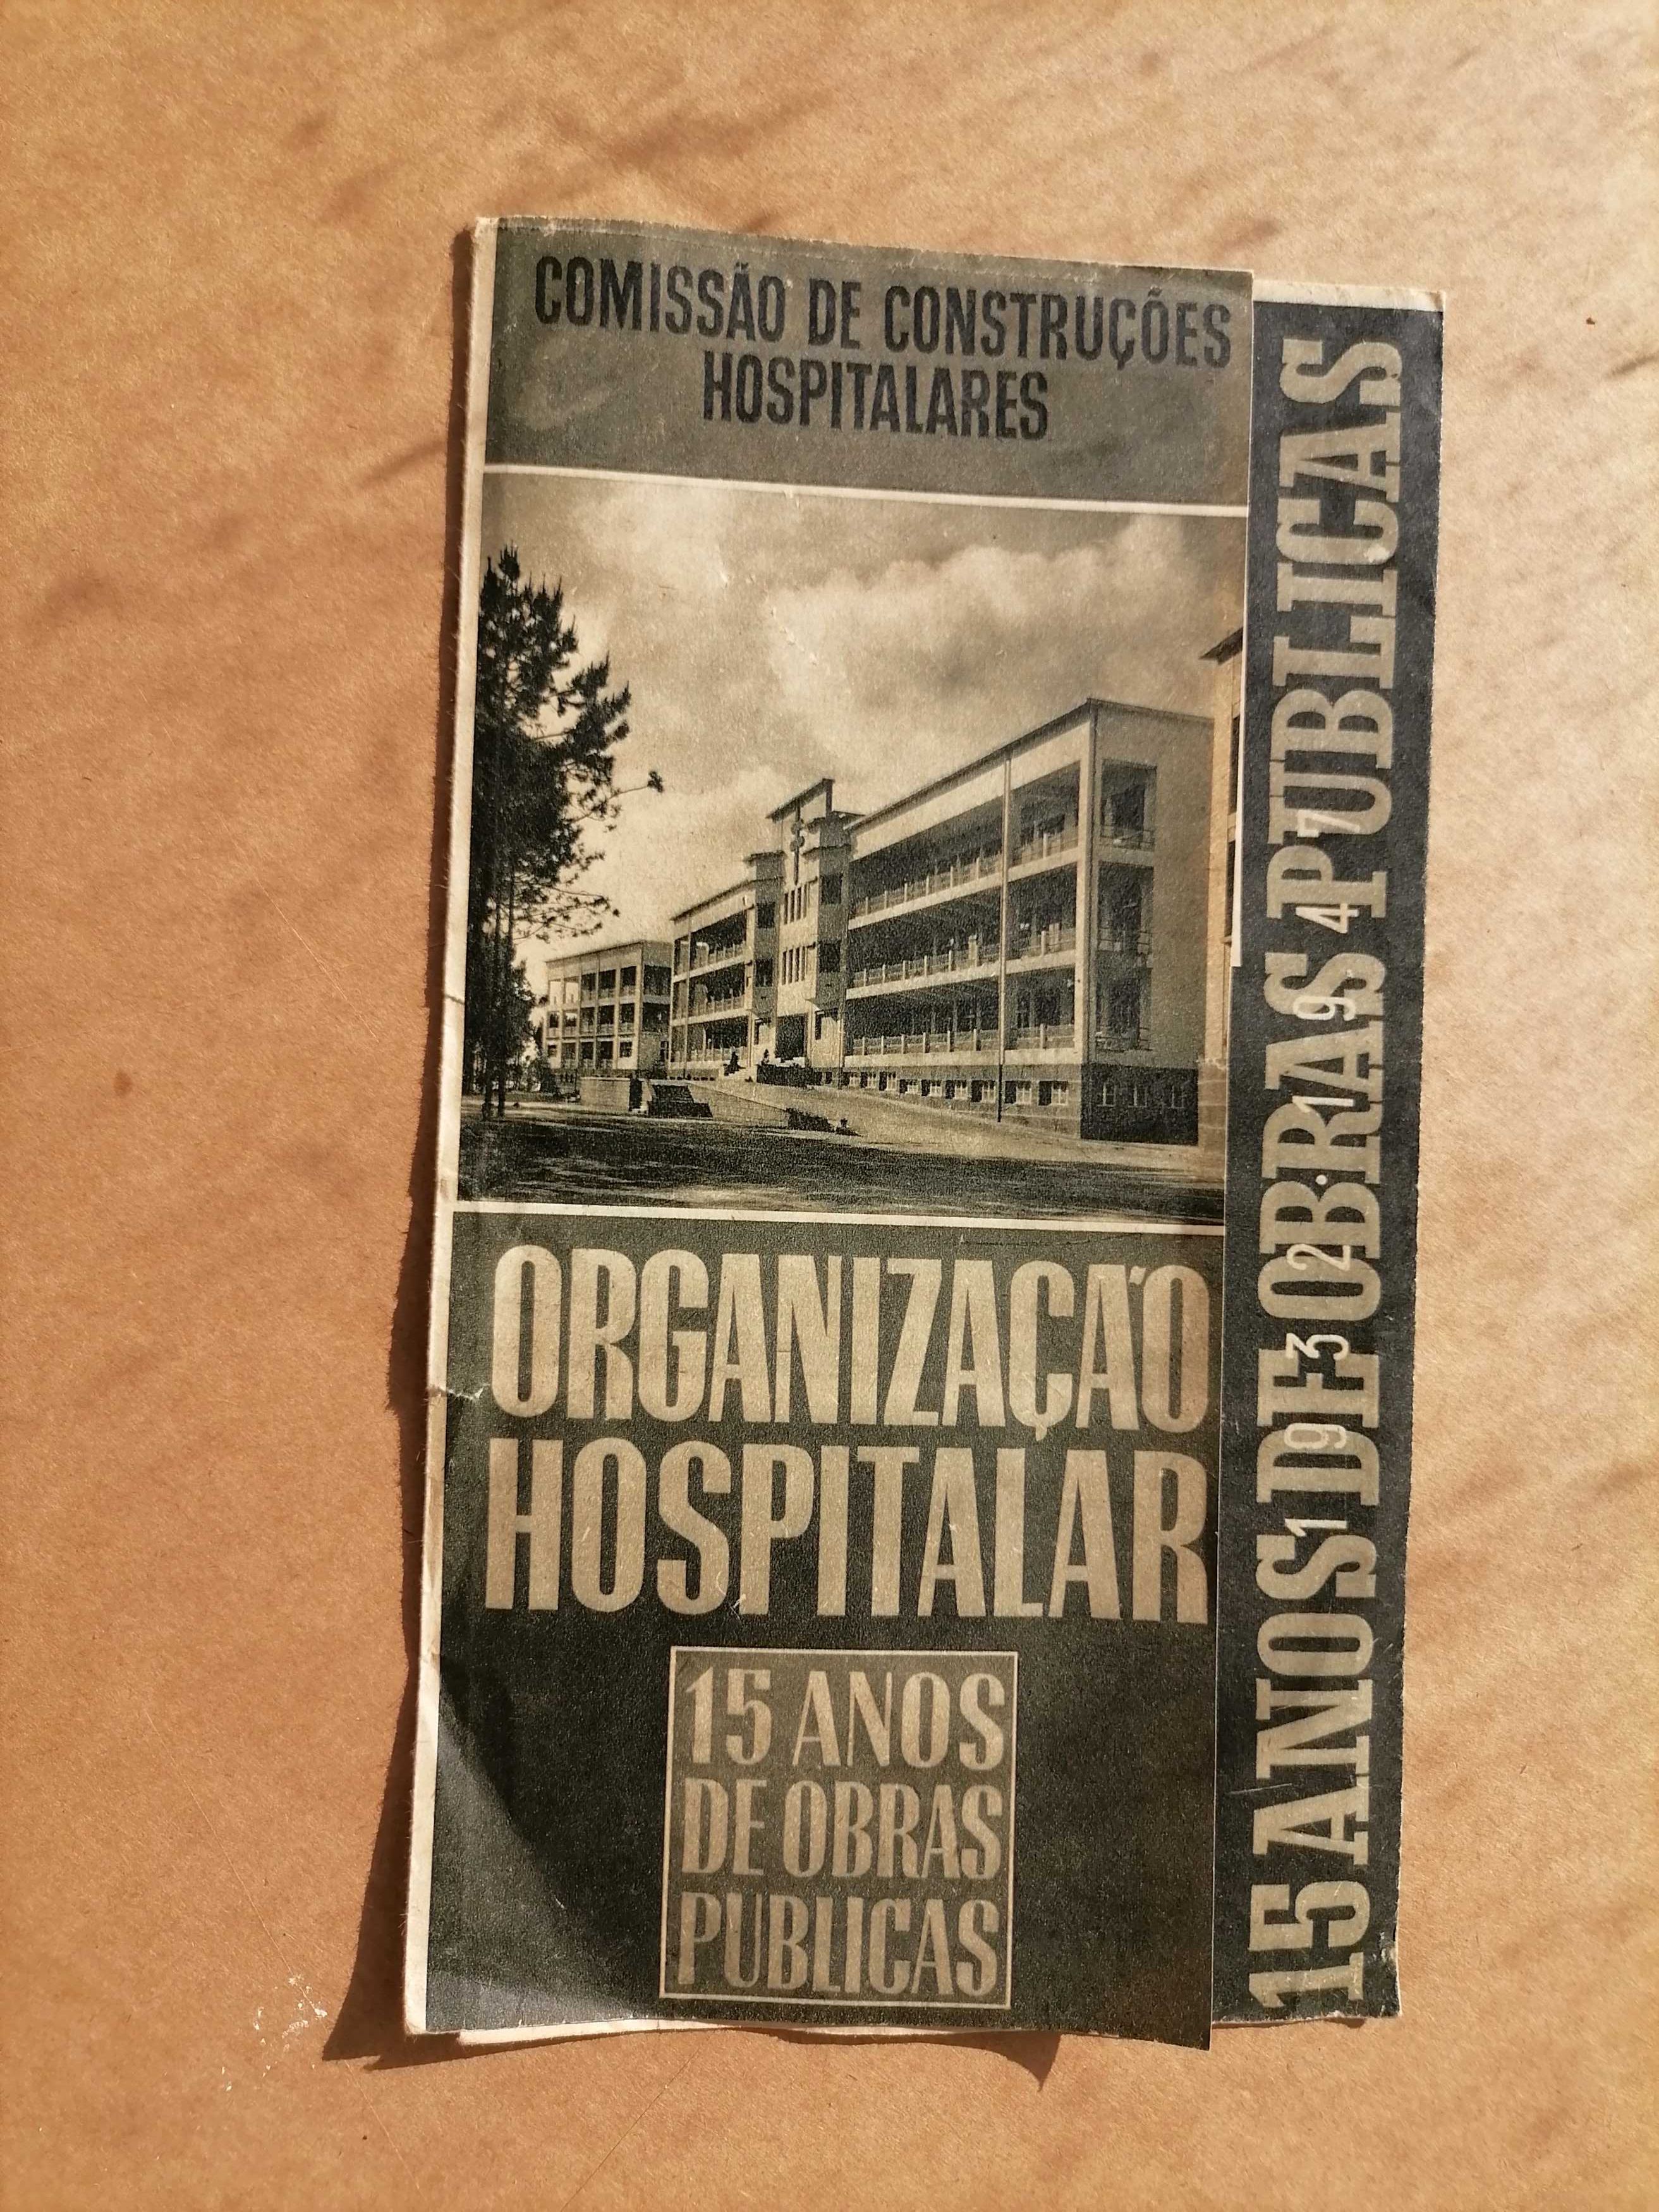 SALAZAR 15 Anos OBRAS PÚBLICAS do Estado Novo 1933/48Escolas,Hospitais